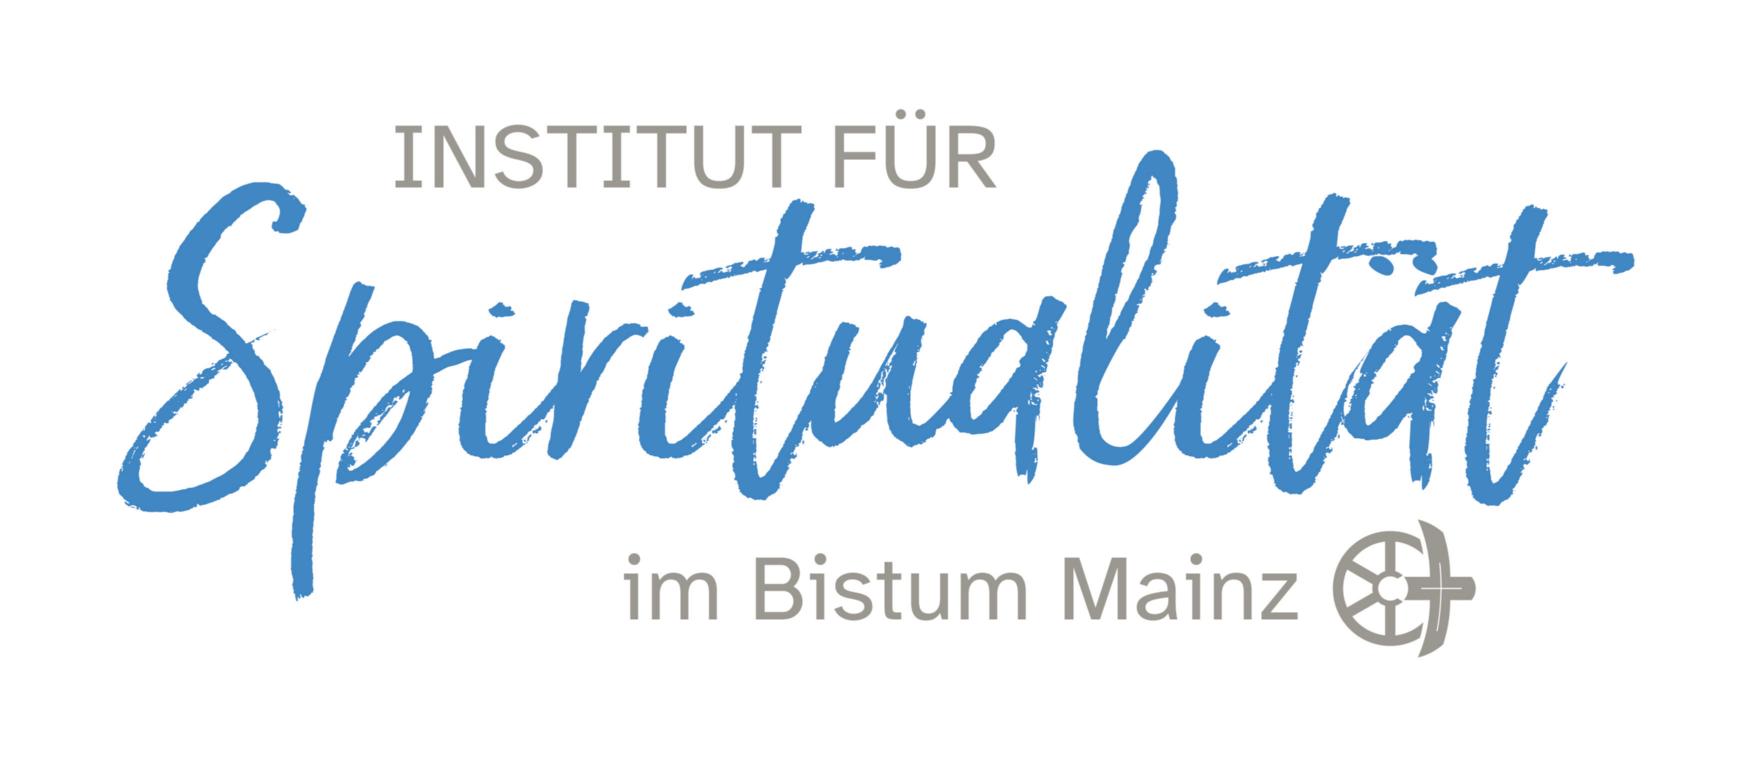 Institut für Spiritualität im Bistum Mainz (c) Bistum Mainz